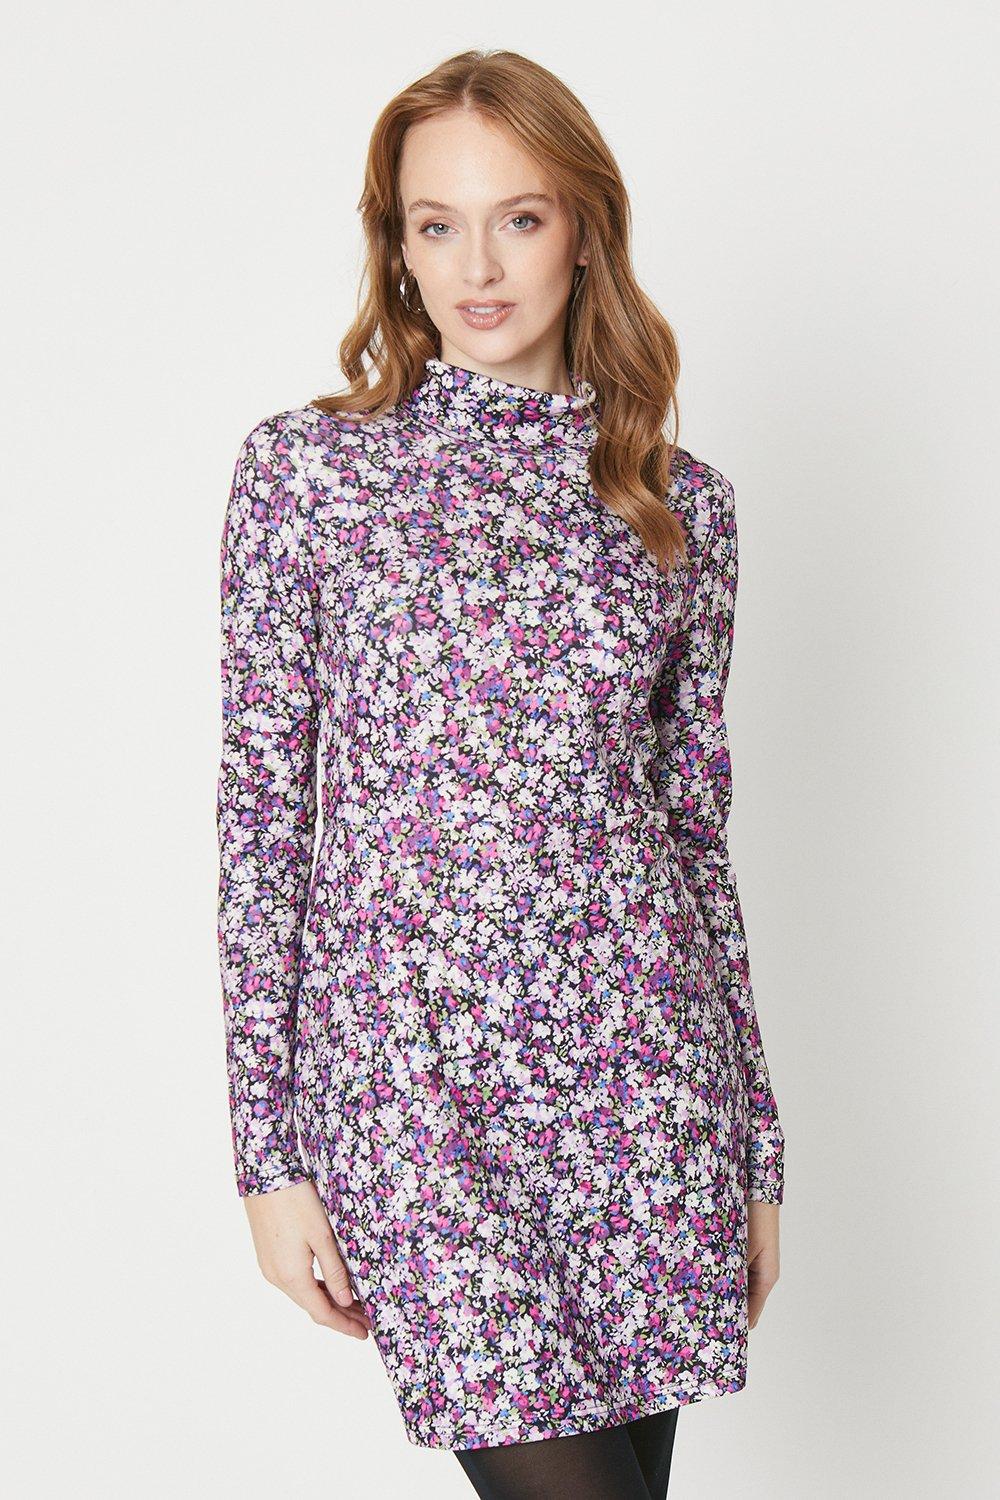 Мини-платье из джерси с цветочным принтом и высоким воротником, длинными рукавами Oasis, фиолетовый